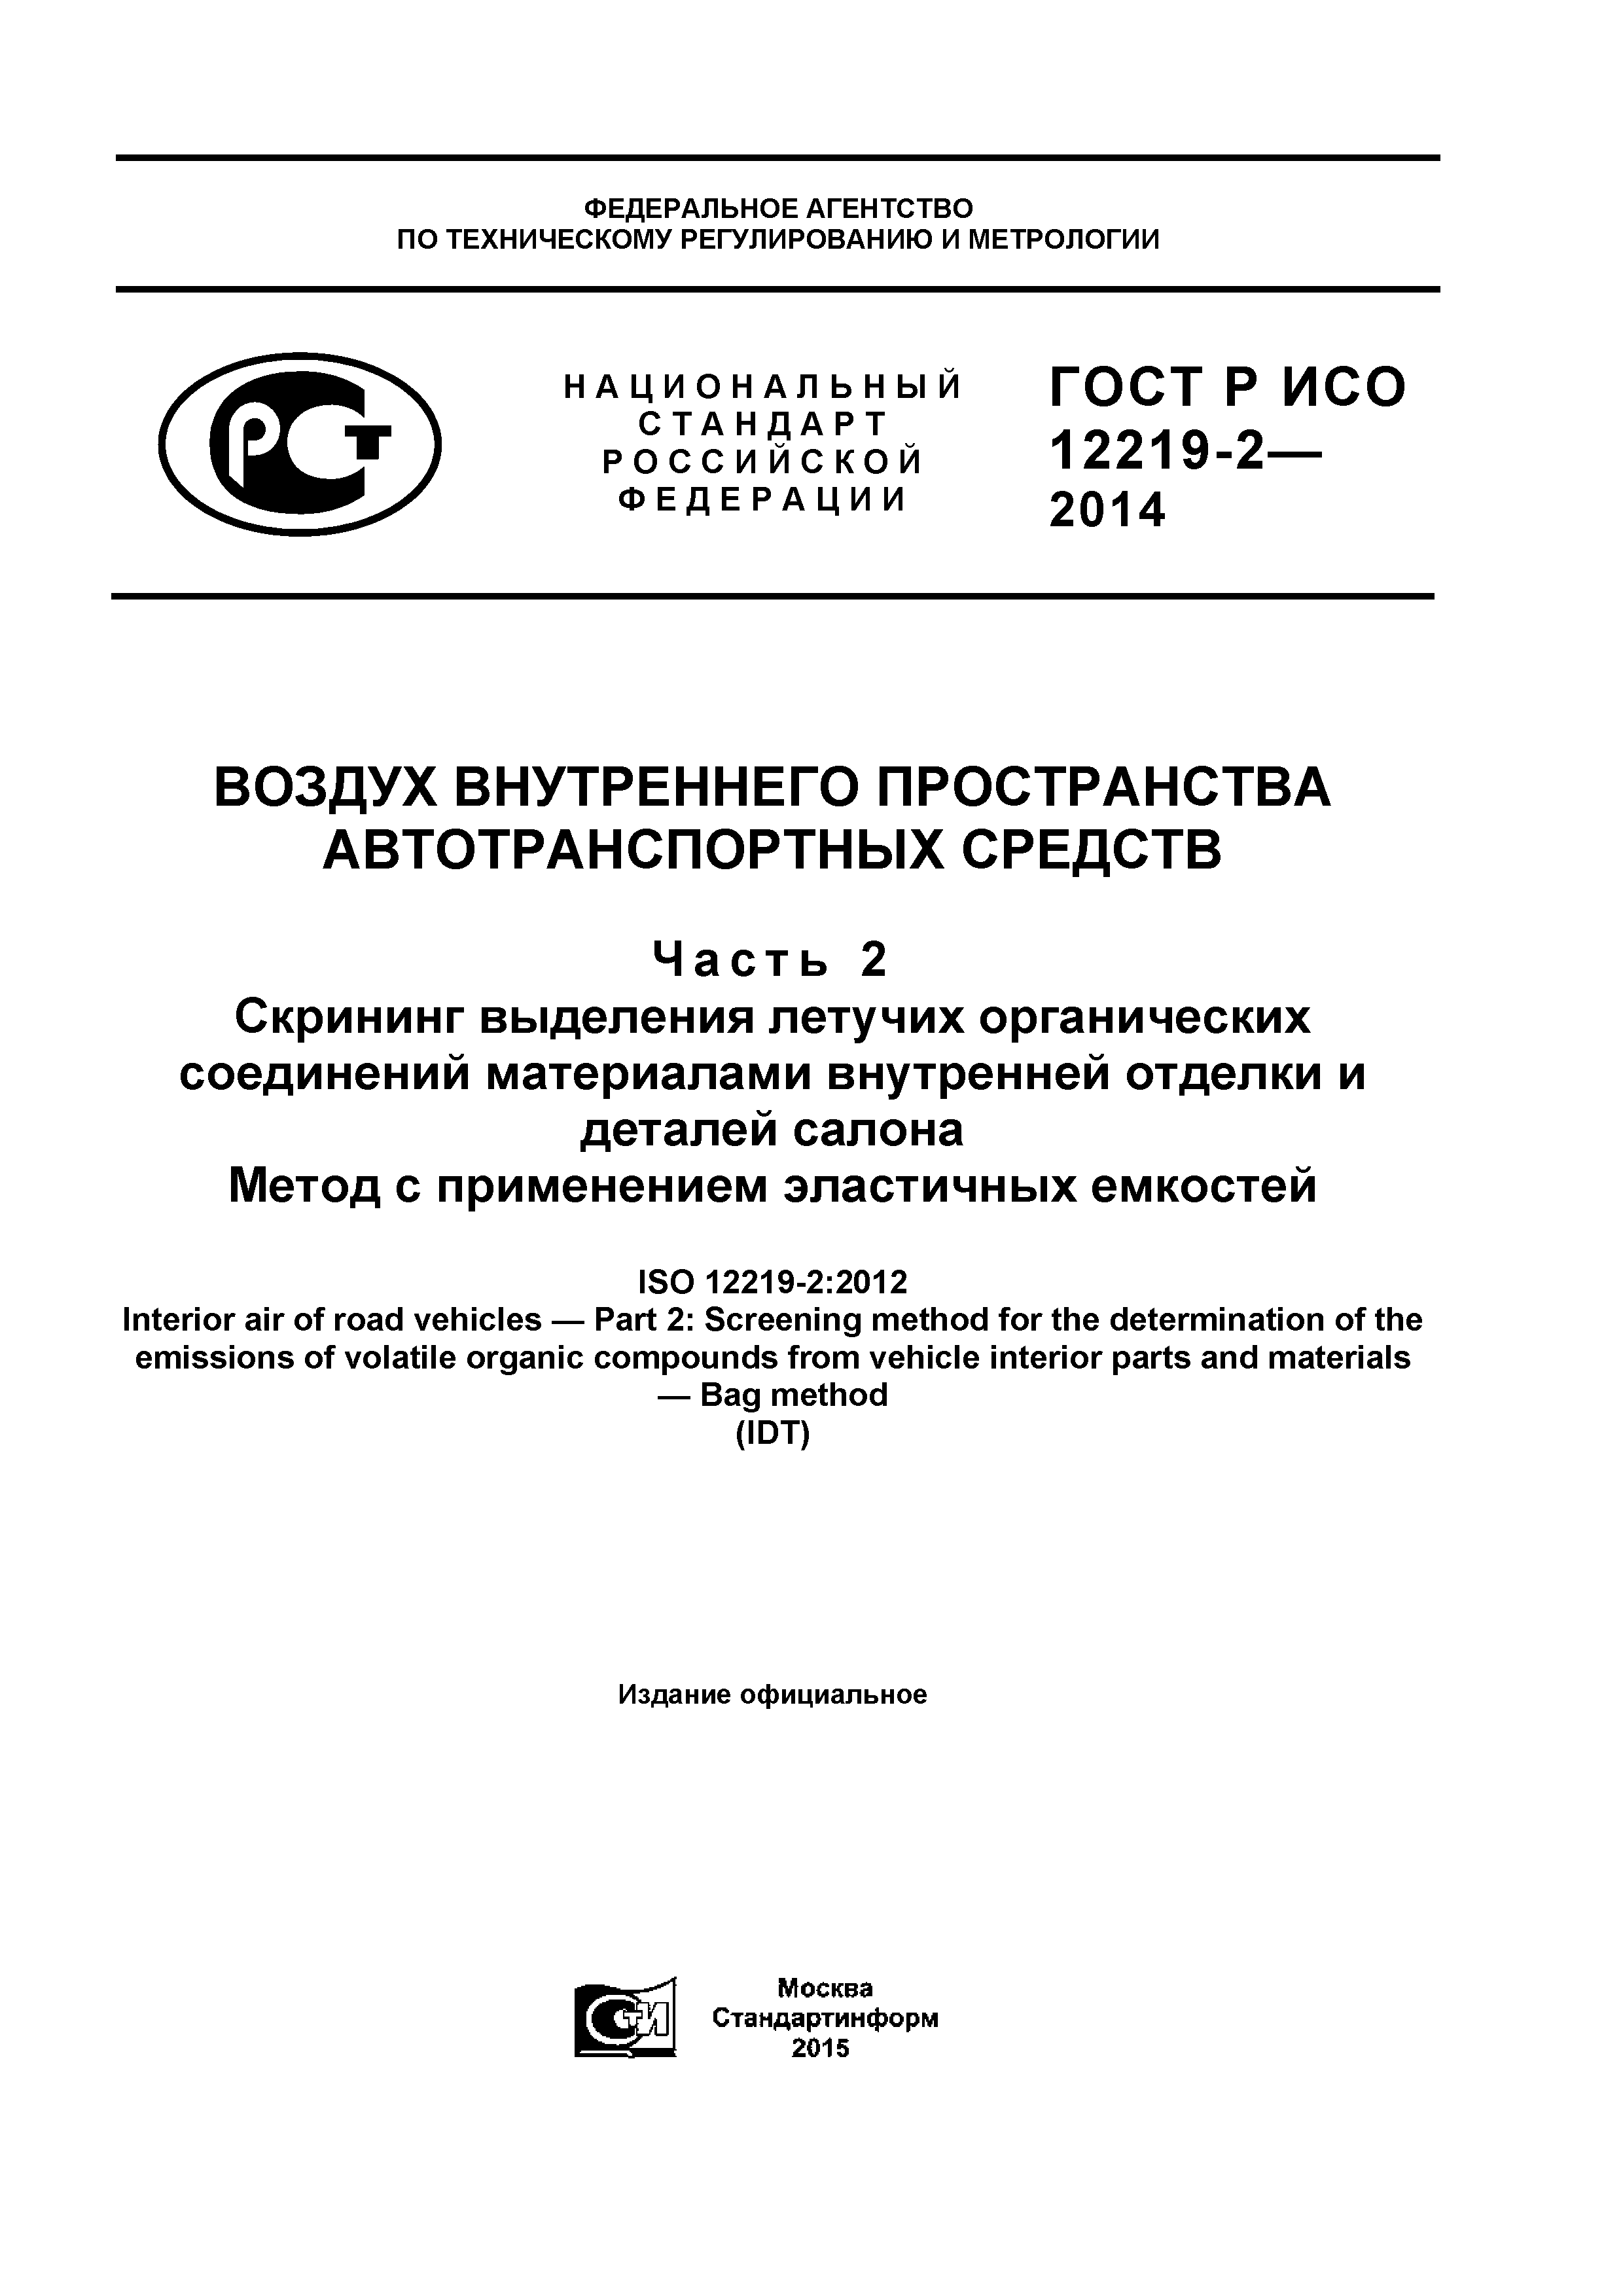 ГОСТ Р ИСО 12219-2-2014